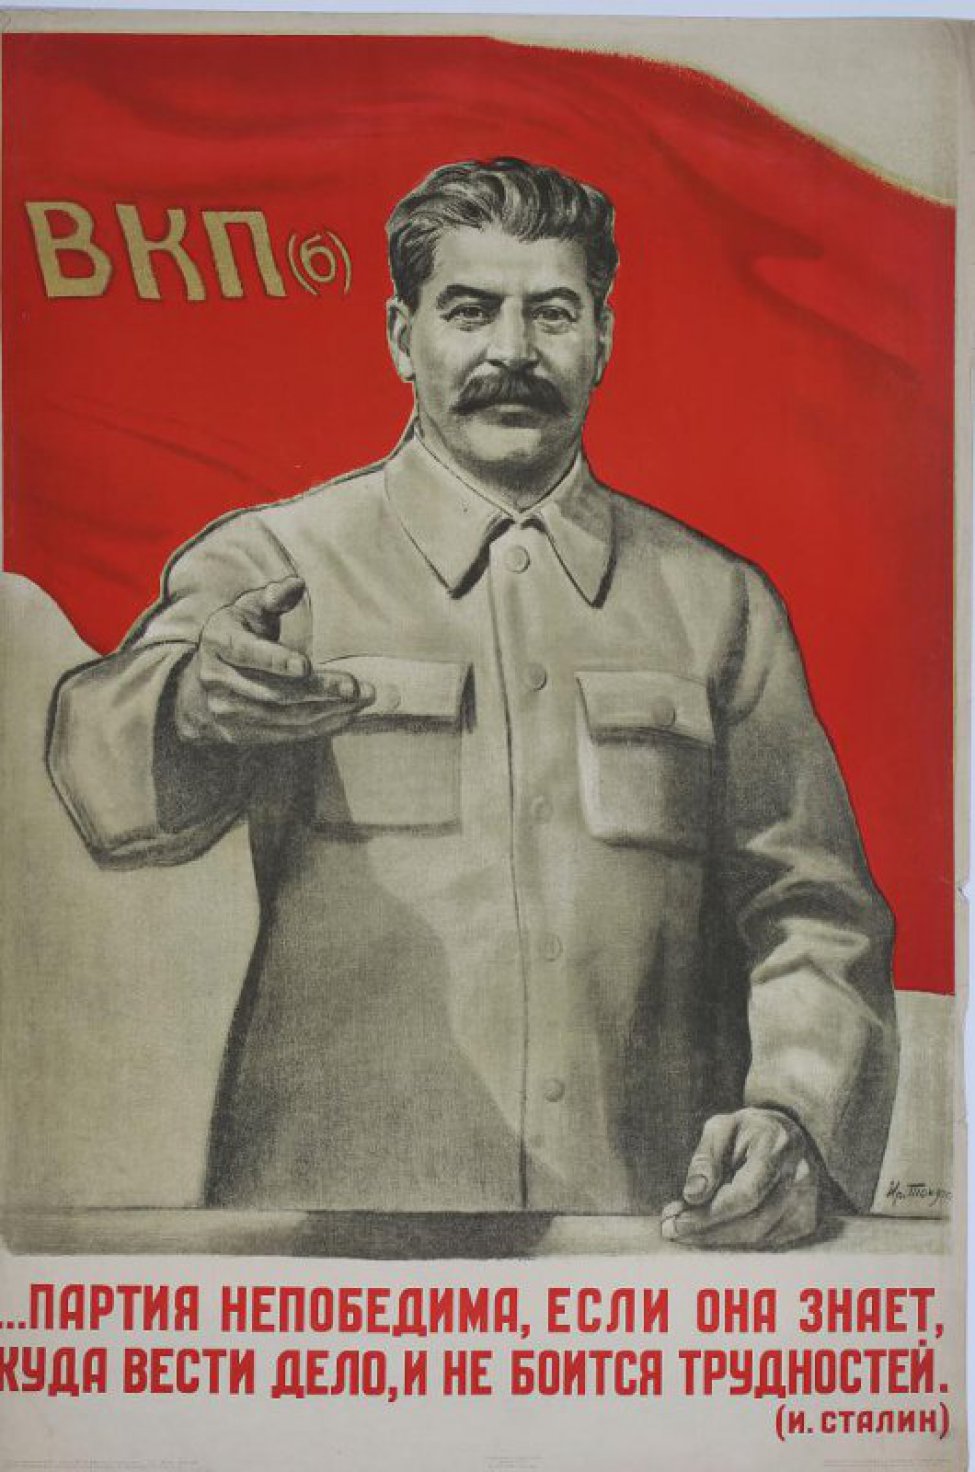 Изображена фигура т.Сталина по колено, правая рука согнута в локте, левая опущена.Вверху красное знамя с надписью ВКП(б), внизу текст: "Партия... трудностей".